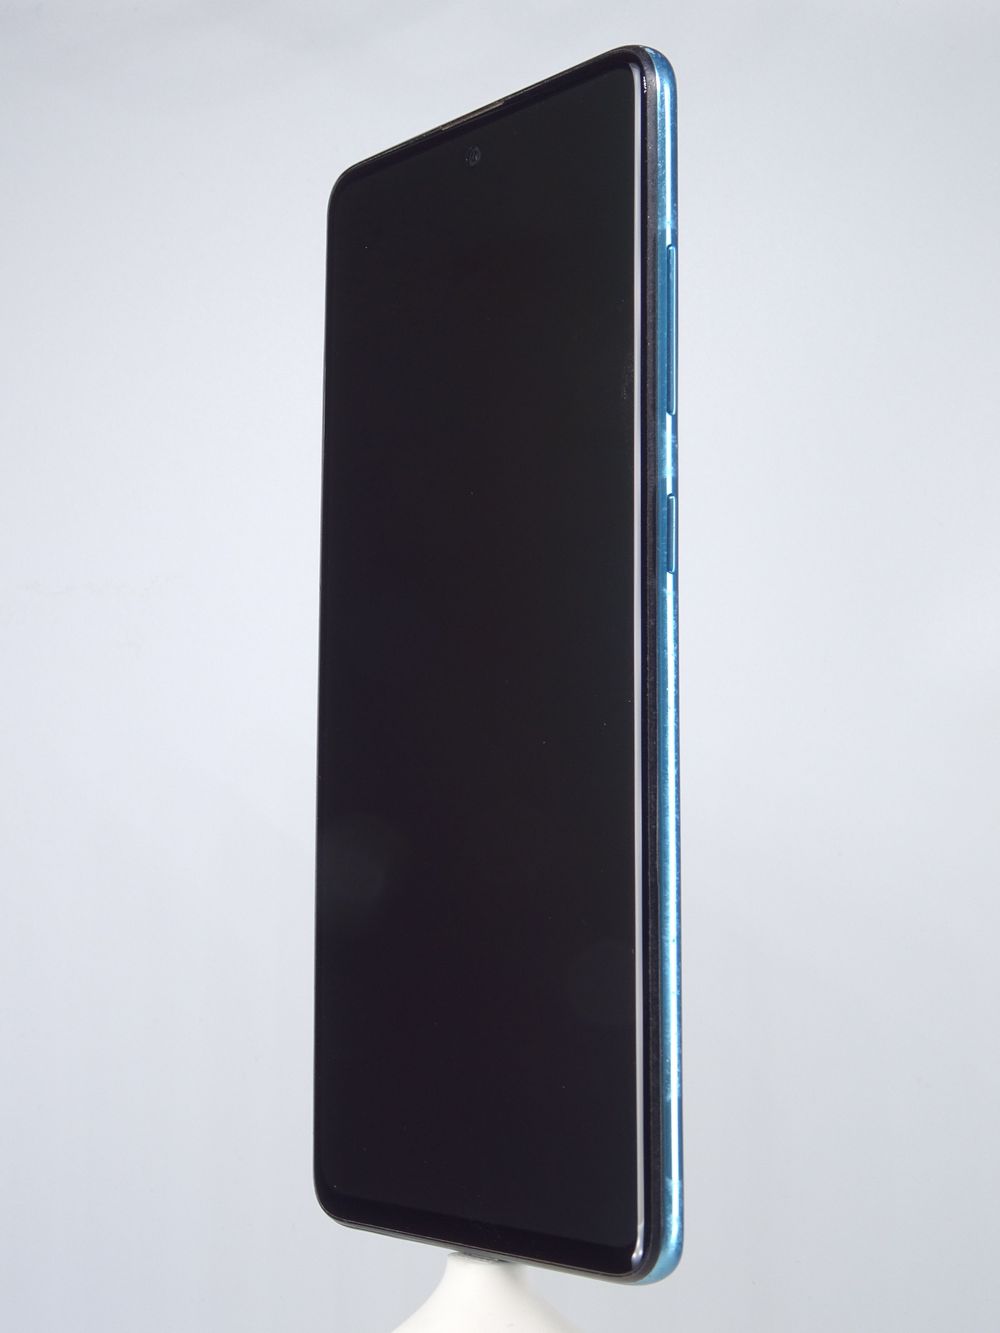 Telefon mobil Samsung Galaxy A51 Dual Sim, Blue, 128 GB,  Foarte Bun